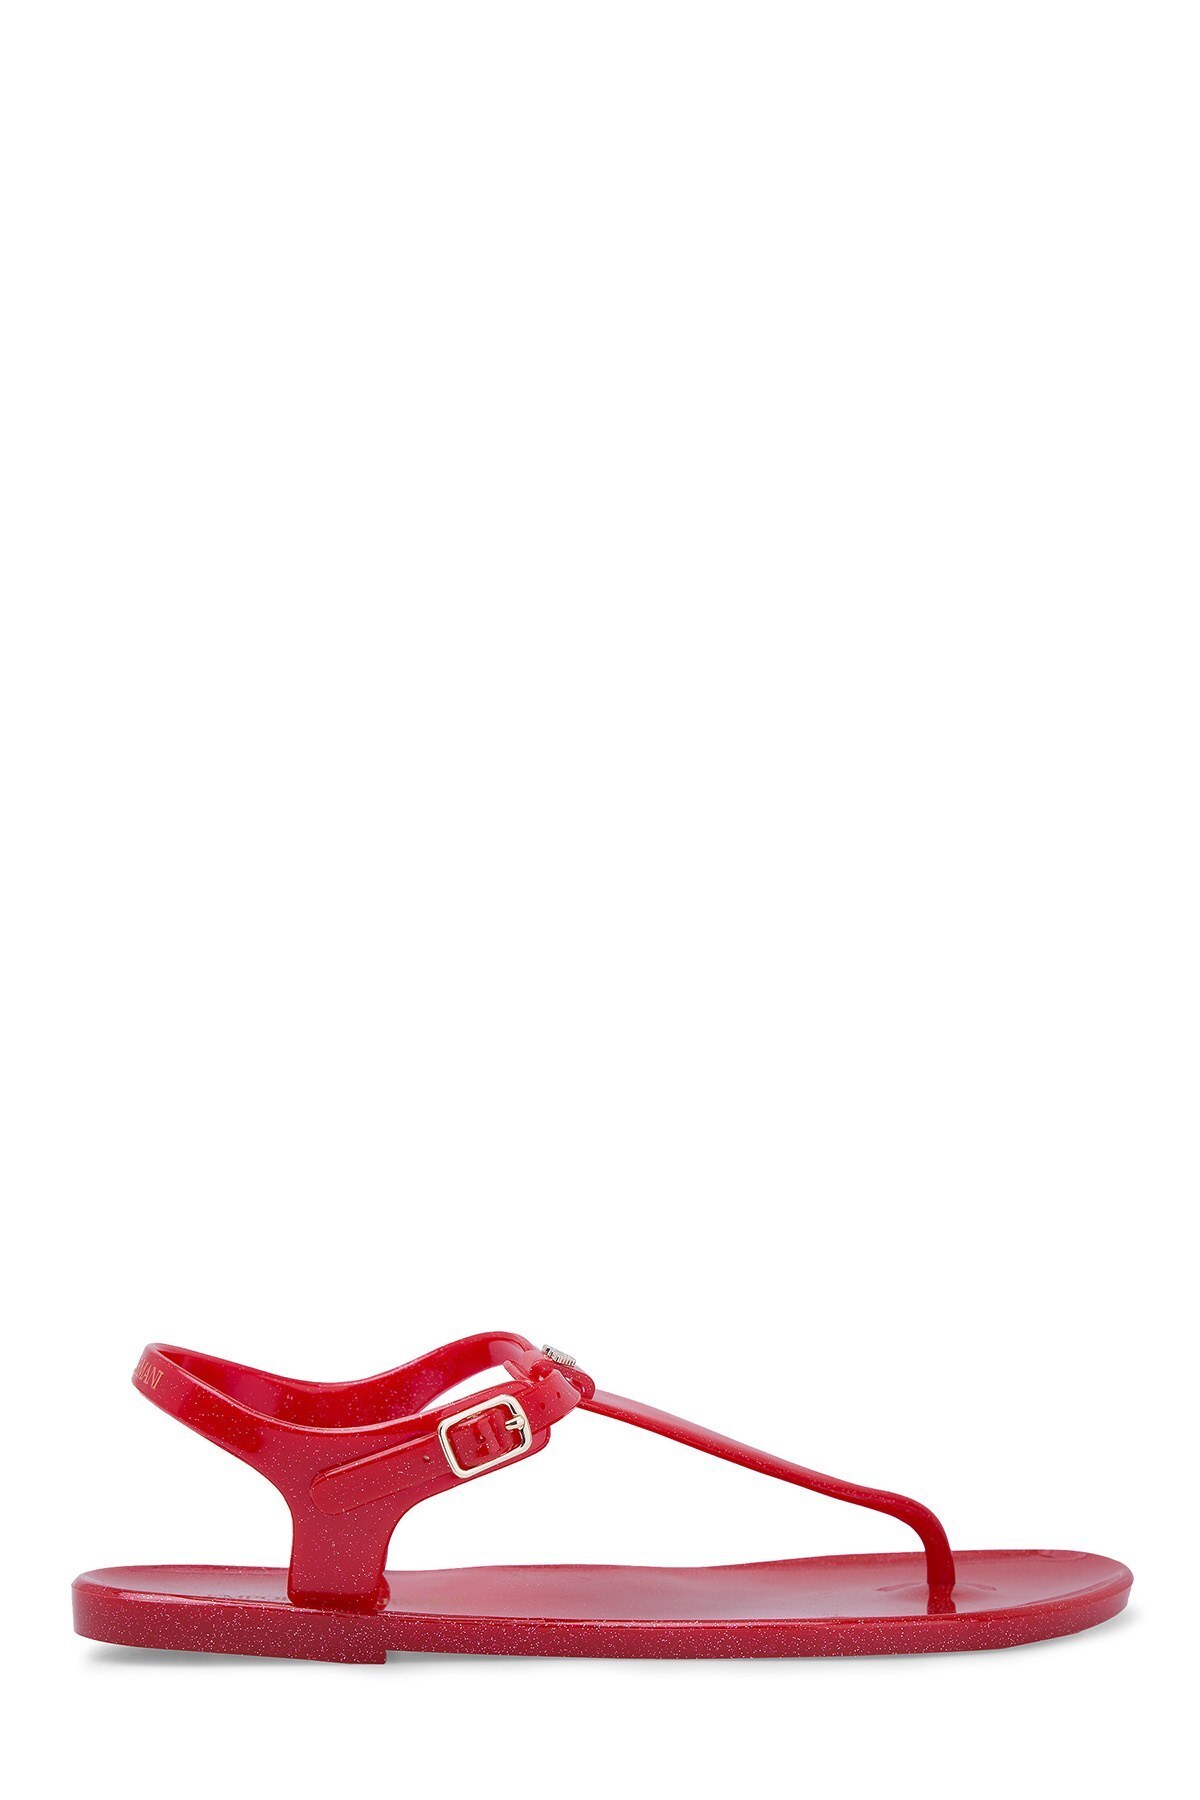 Emporio Armani Kadın Sandalet X3QS06 XL816 M604 Kırmızı-Gold